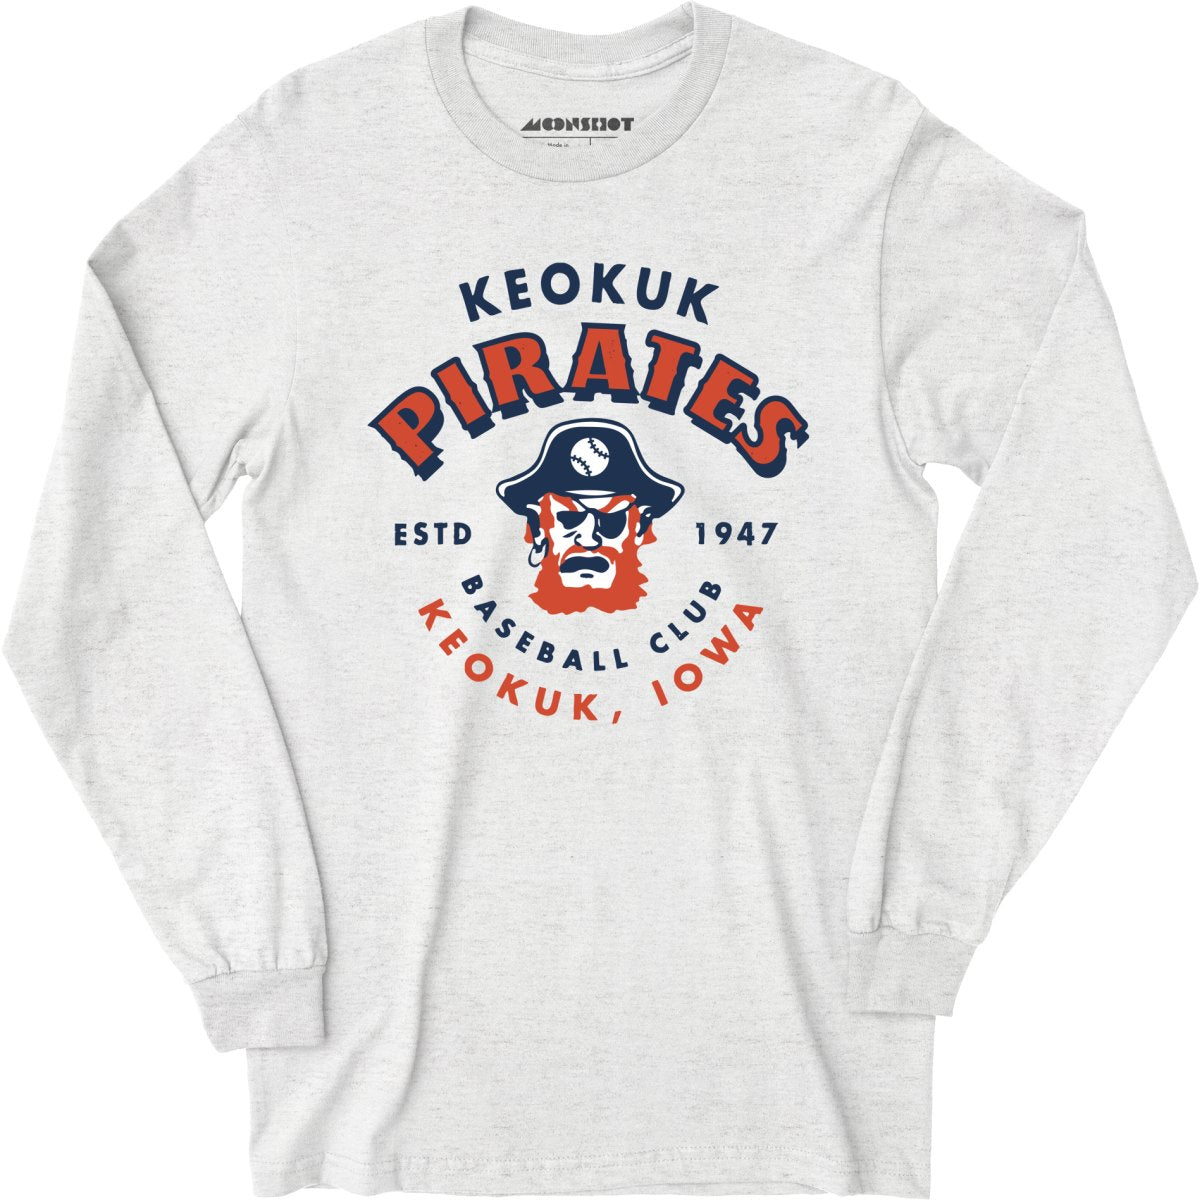 White Label Mfg Keokuk Pirates - Iowa - Vintage Defunct Baseball Teams - 3/4 Sleeve Raglan T-Shirt White/Navy / L